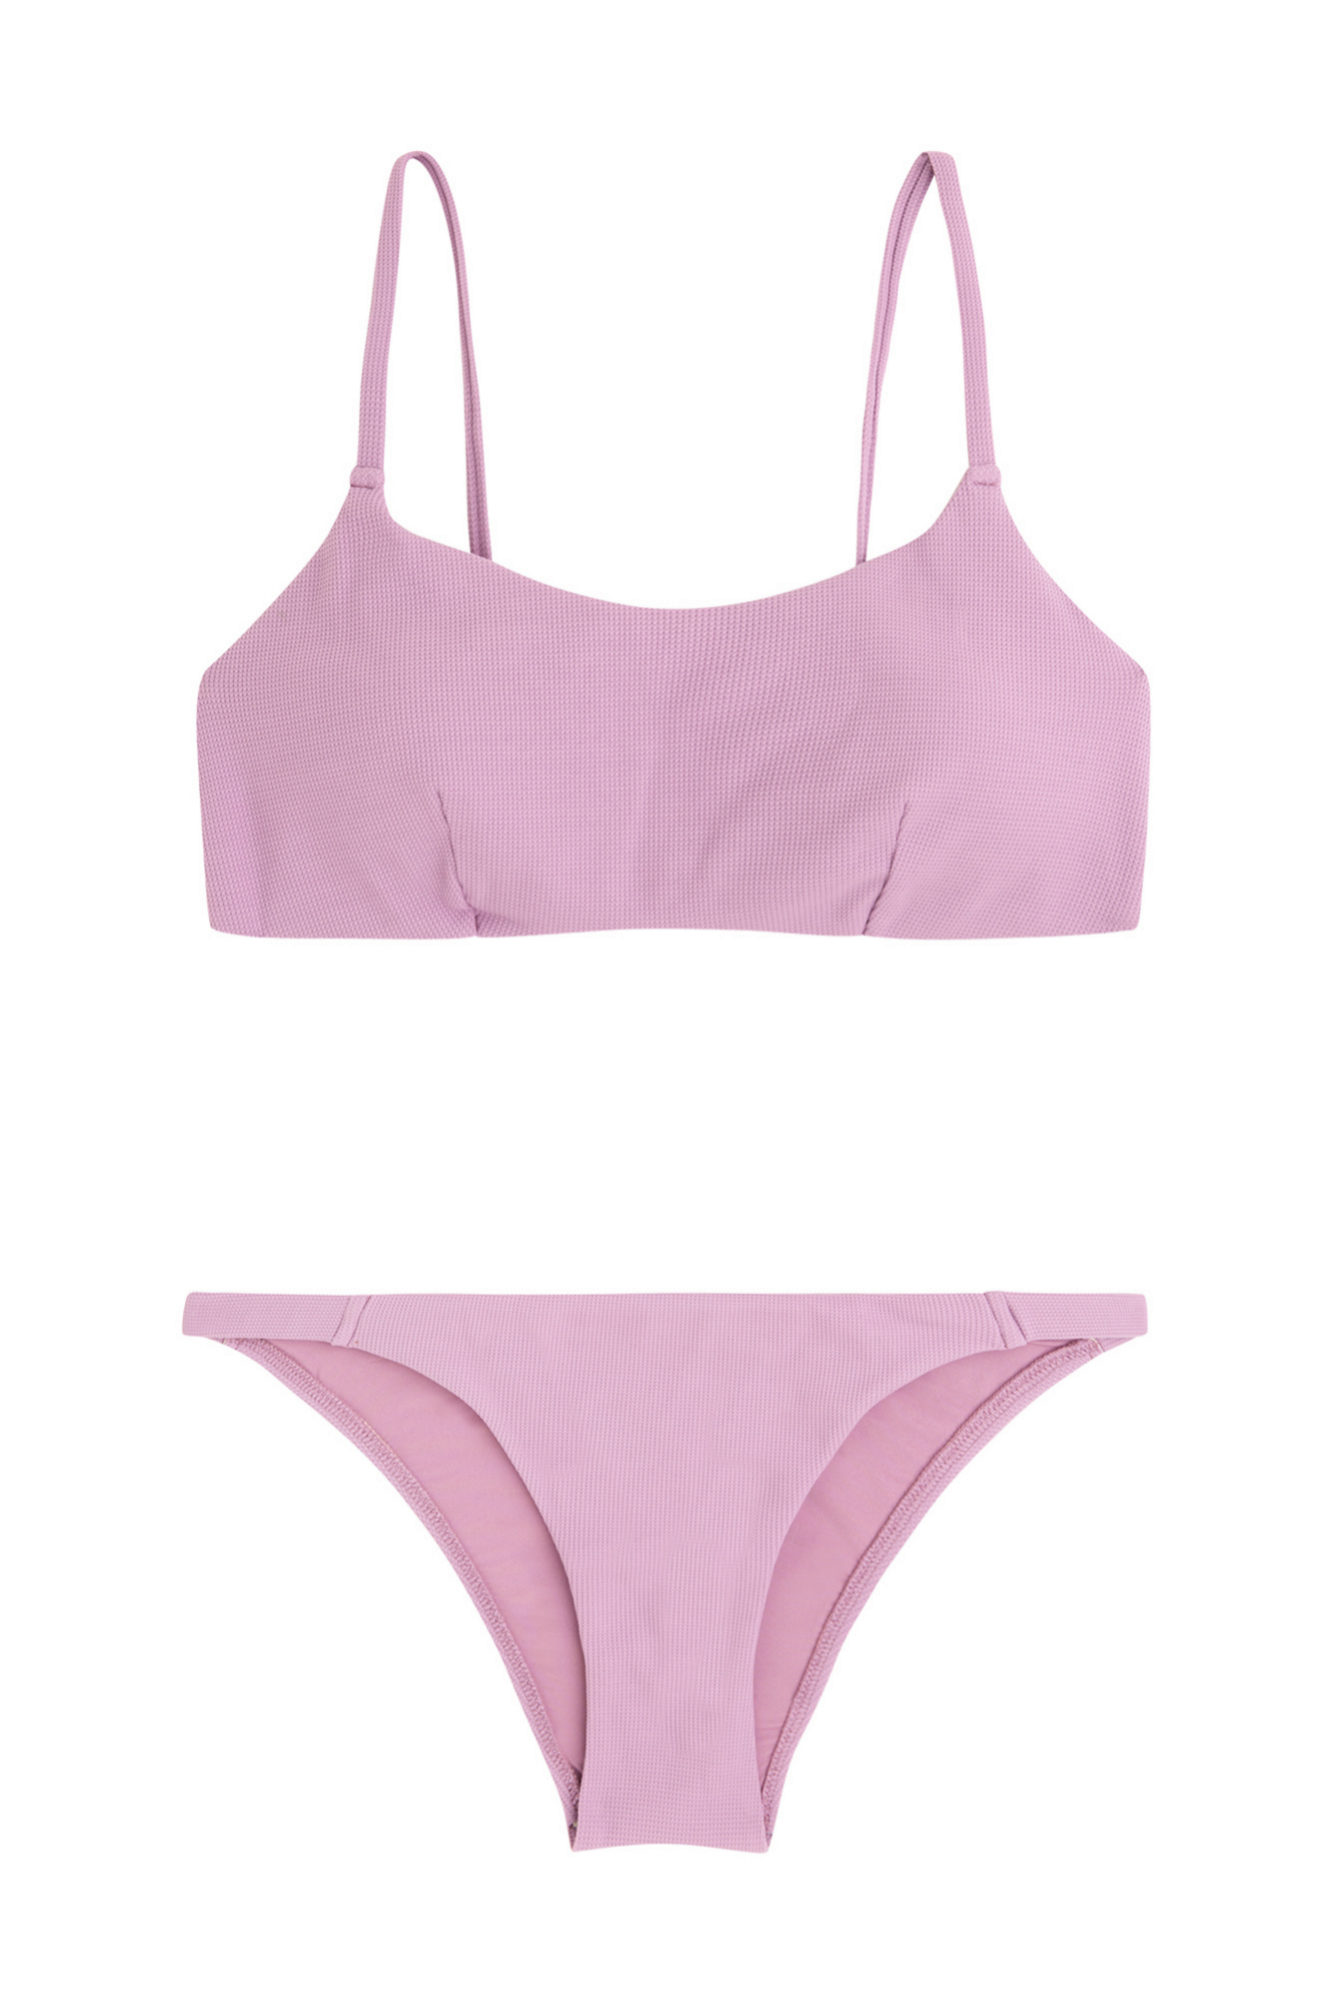 Bikini de estilo bandeau en color violeta de Oysho (14,99¤ y 10,39¤)